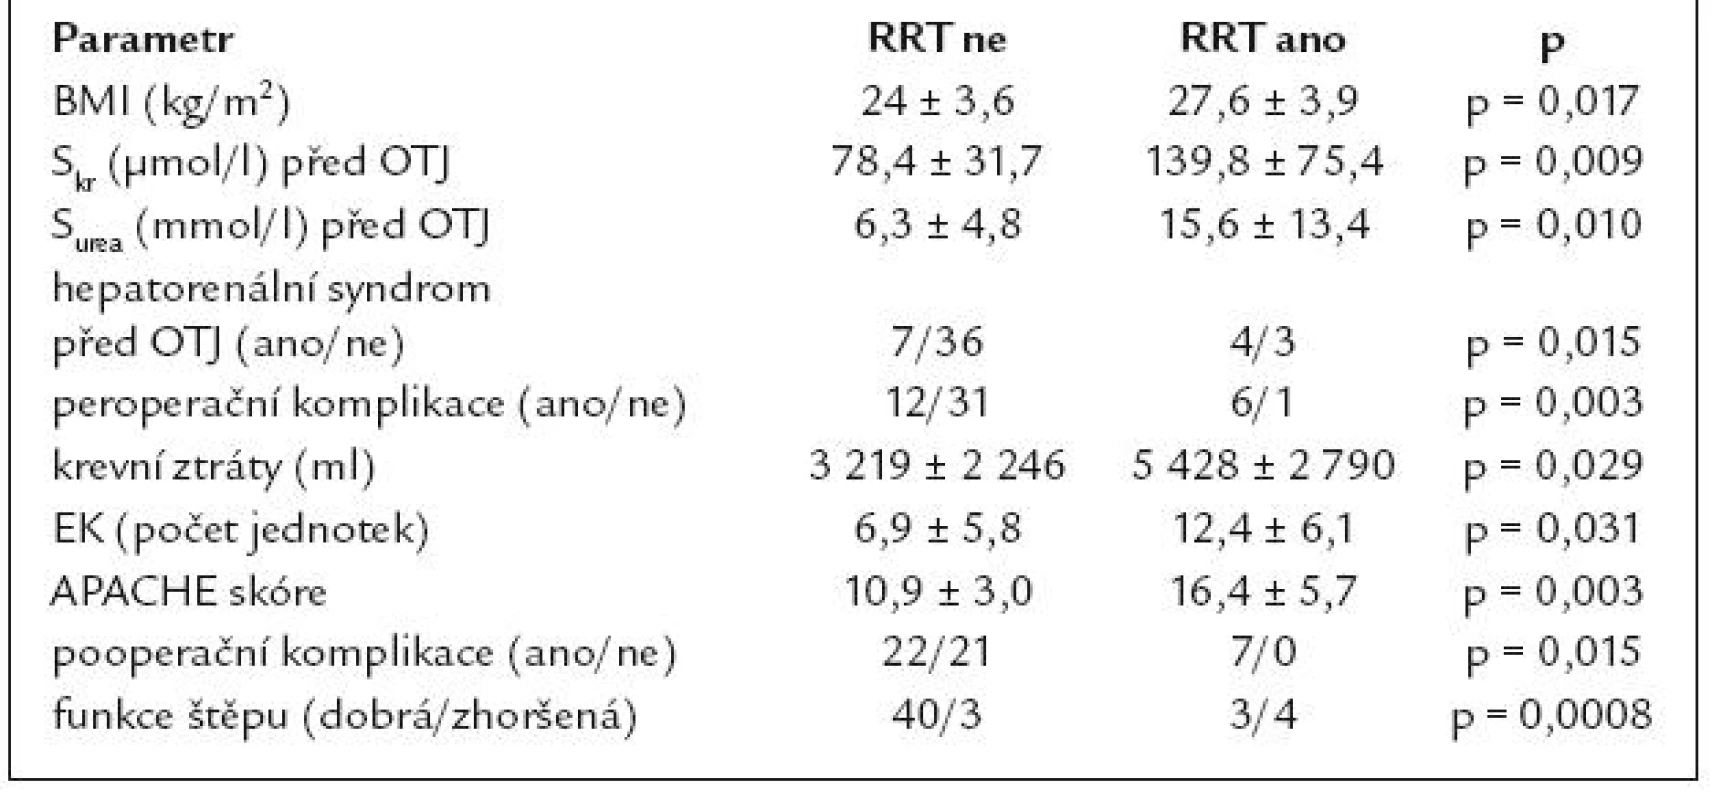 Parametry, u nichž byly shledány statisticky významné rozdíly mezi skupinou pacientů se zavedením RRT a skupinou bez RRT v 1. týdnu po OTJ (parametry bez prokázané statistické významnosti nejsou uvedeny).